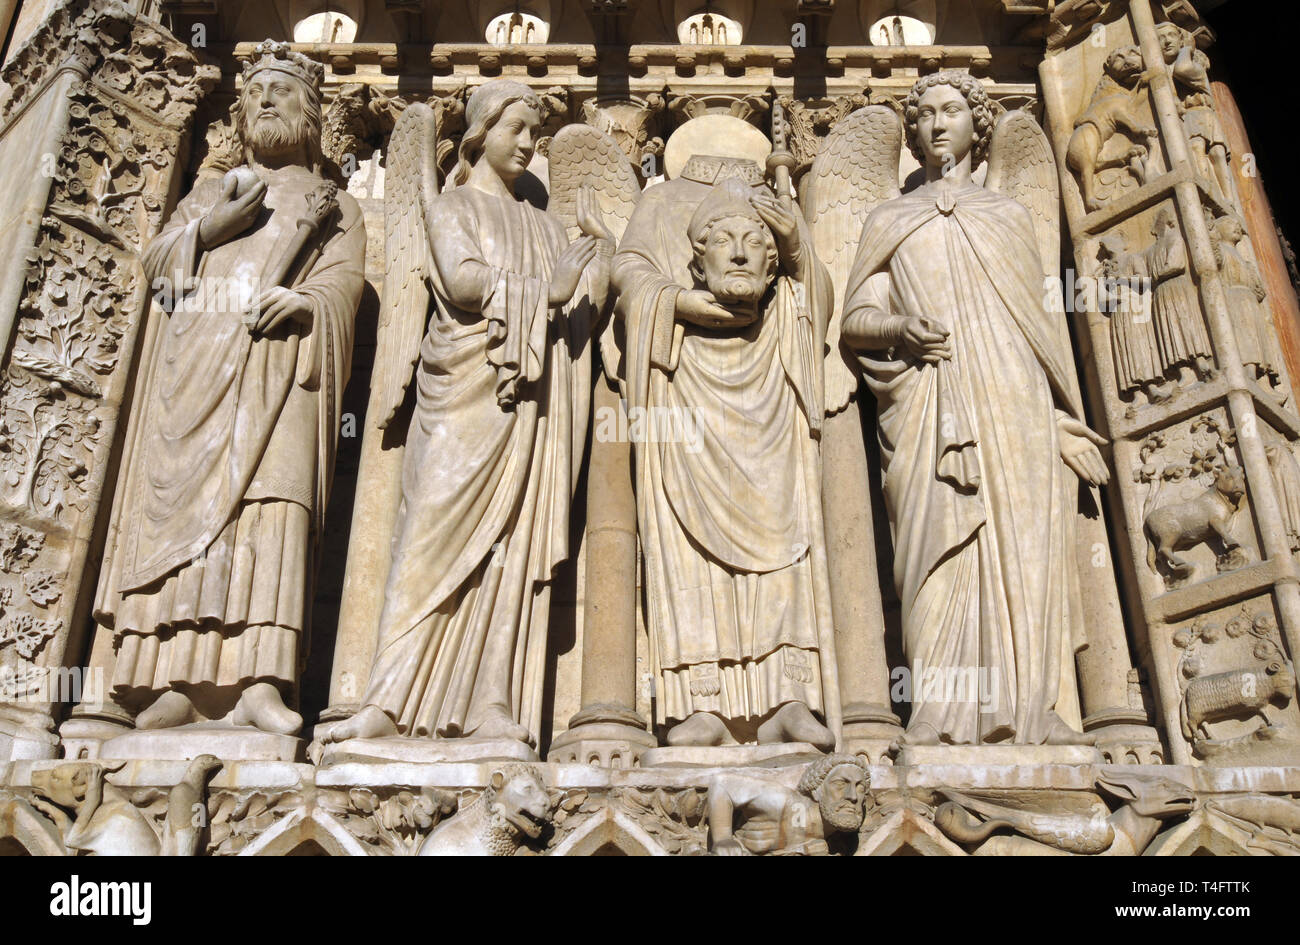 Détail de sculptures sur la façade de la cathédrale Notre-Dame de Paris à Paris, France, y compris celle du martyr Saint Denis tenant sa tête. Banque D'Images